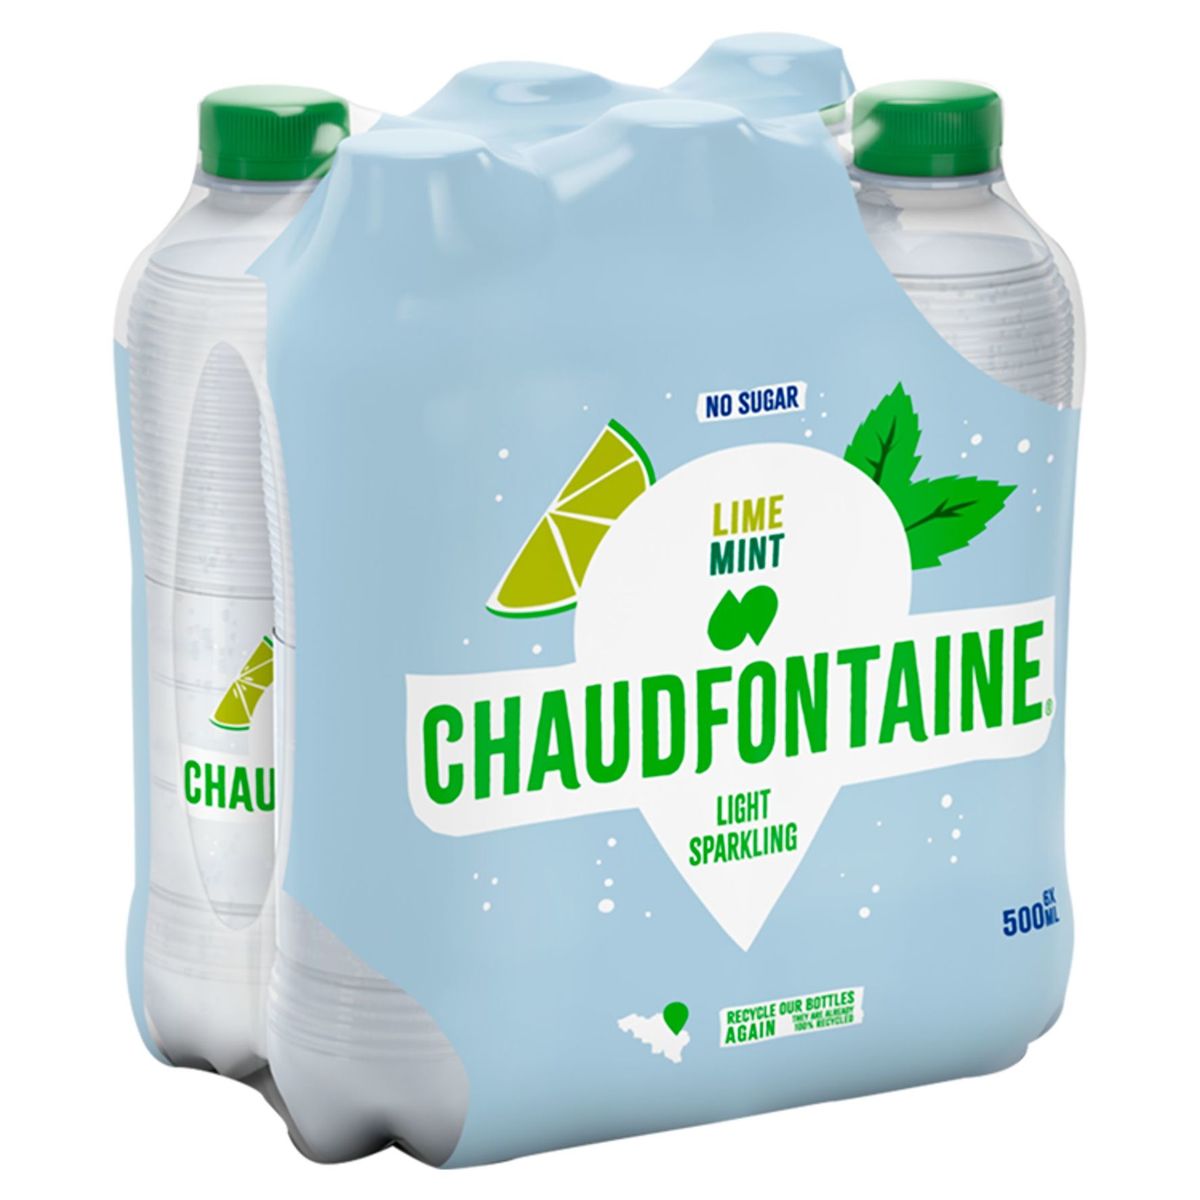 Chaudfontaine Lime Mint Sparkling No Sugar Pet 500 ml X 6